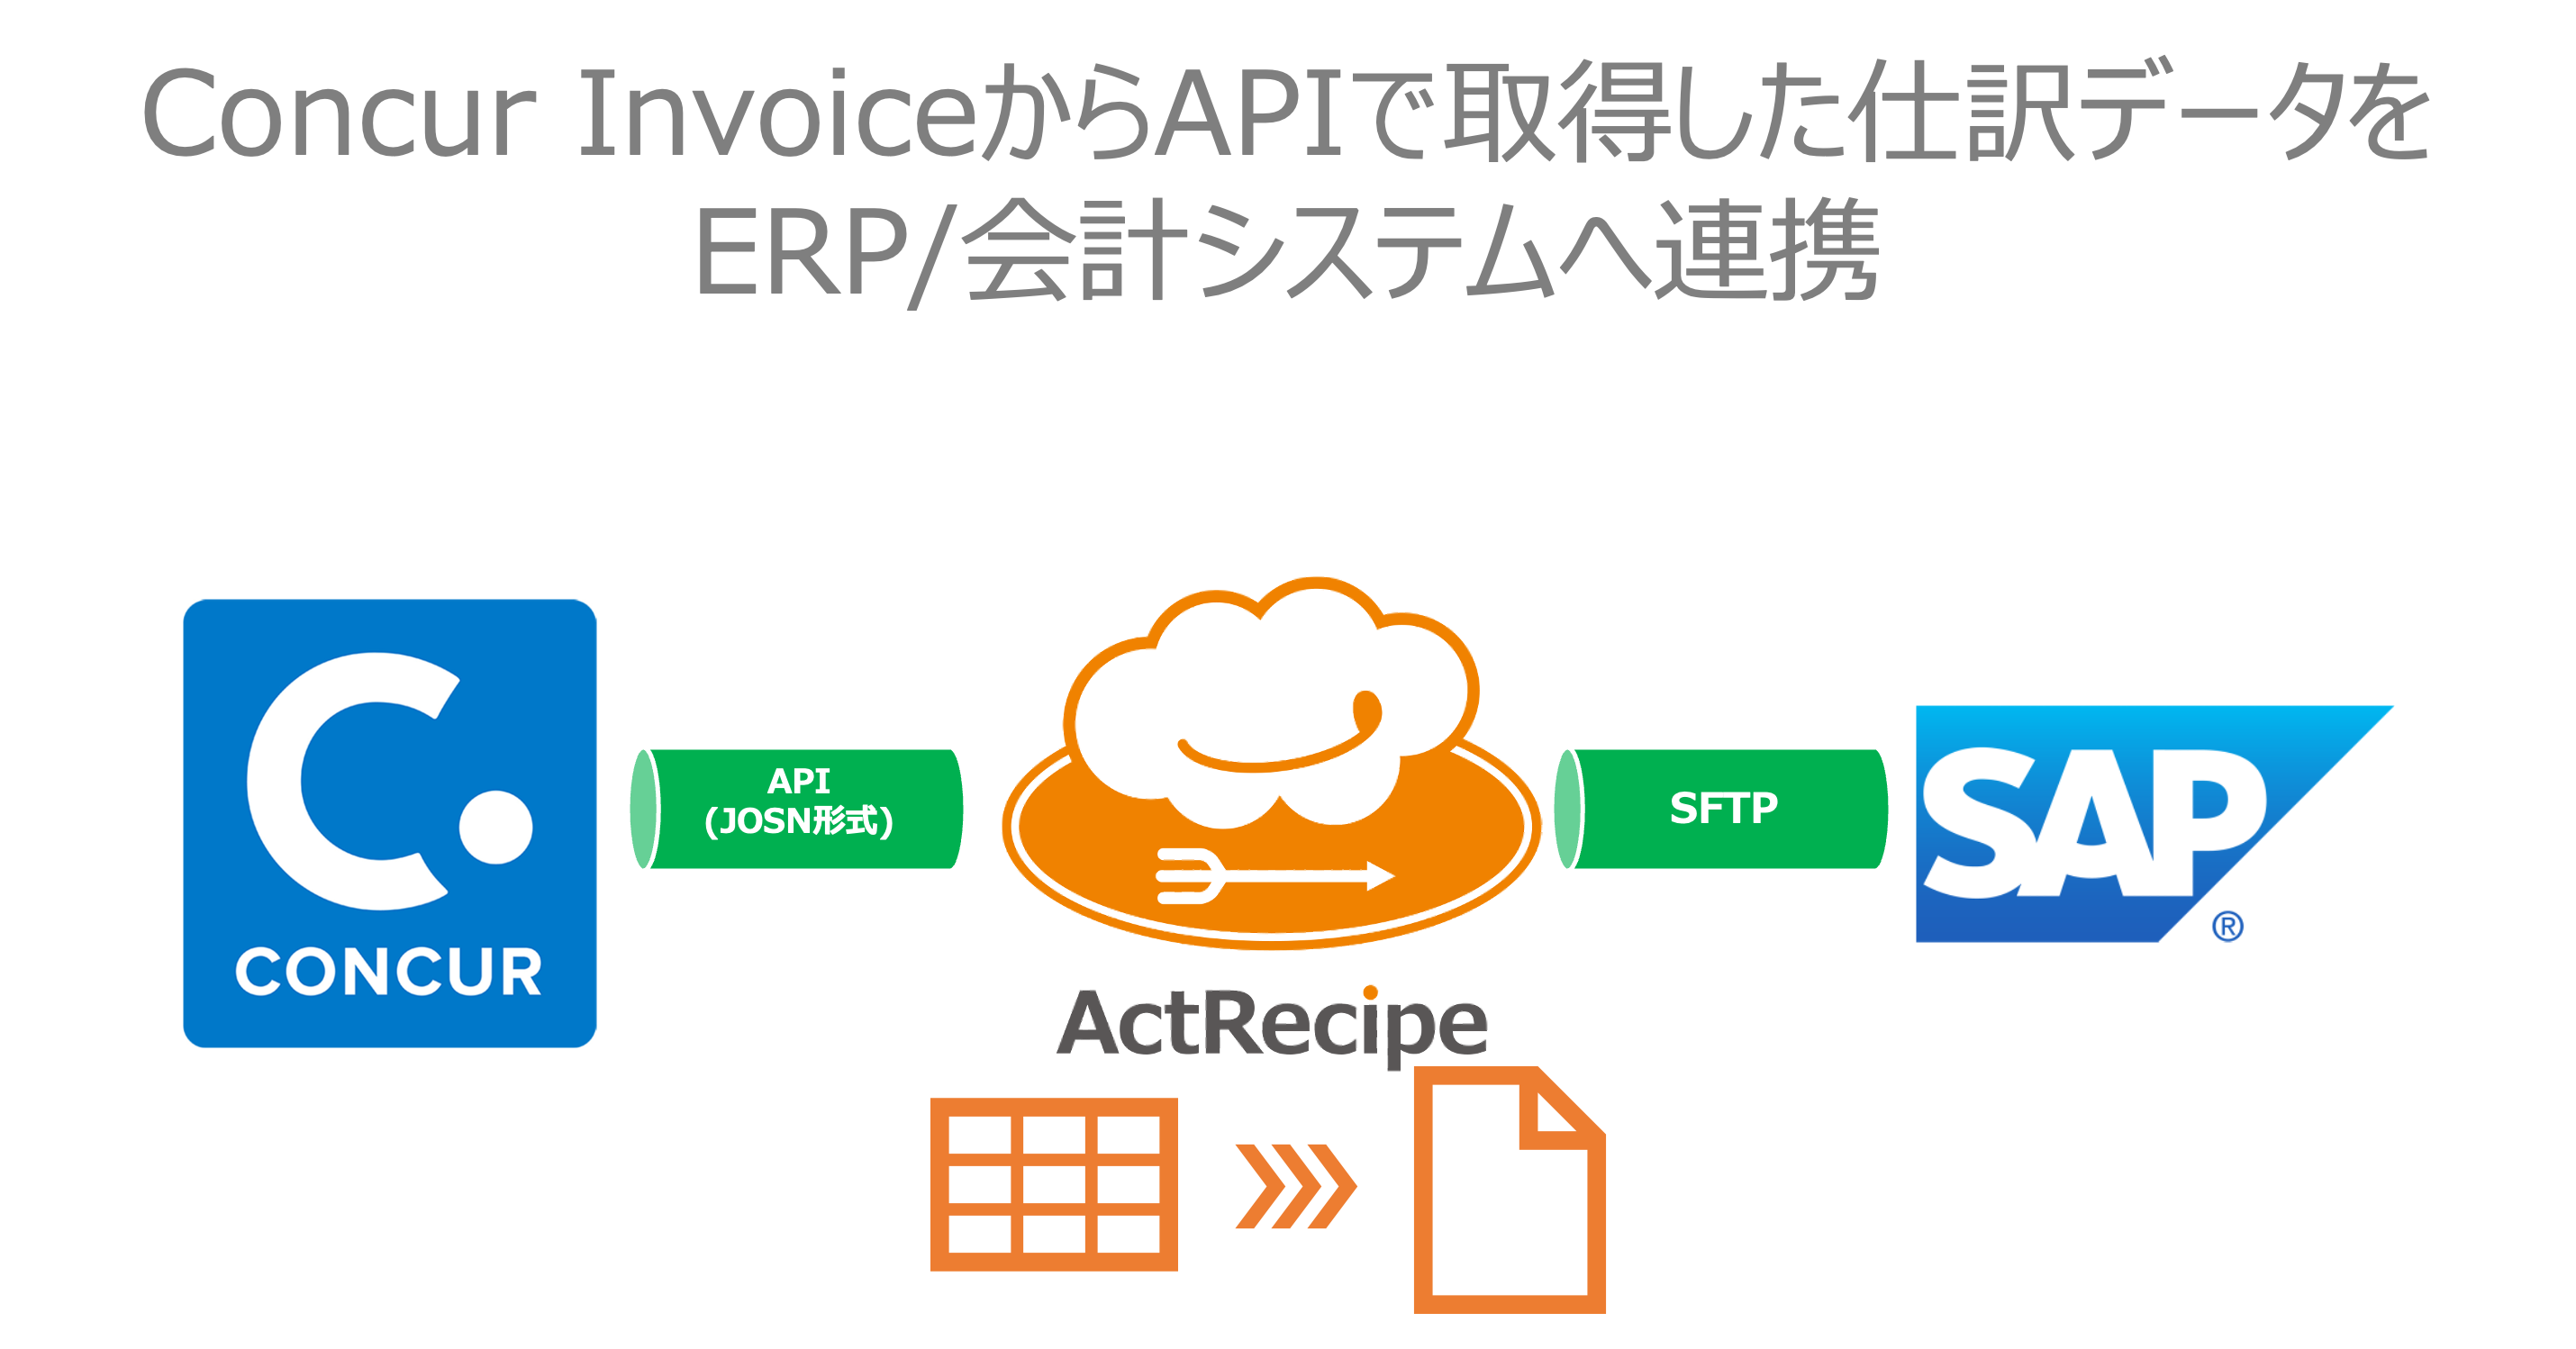 Concur_Invoice__API_______________ERP__________.png